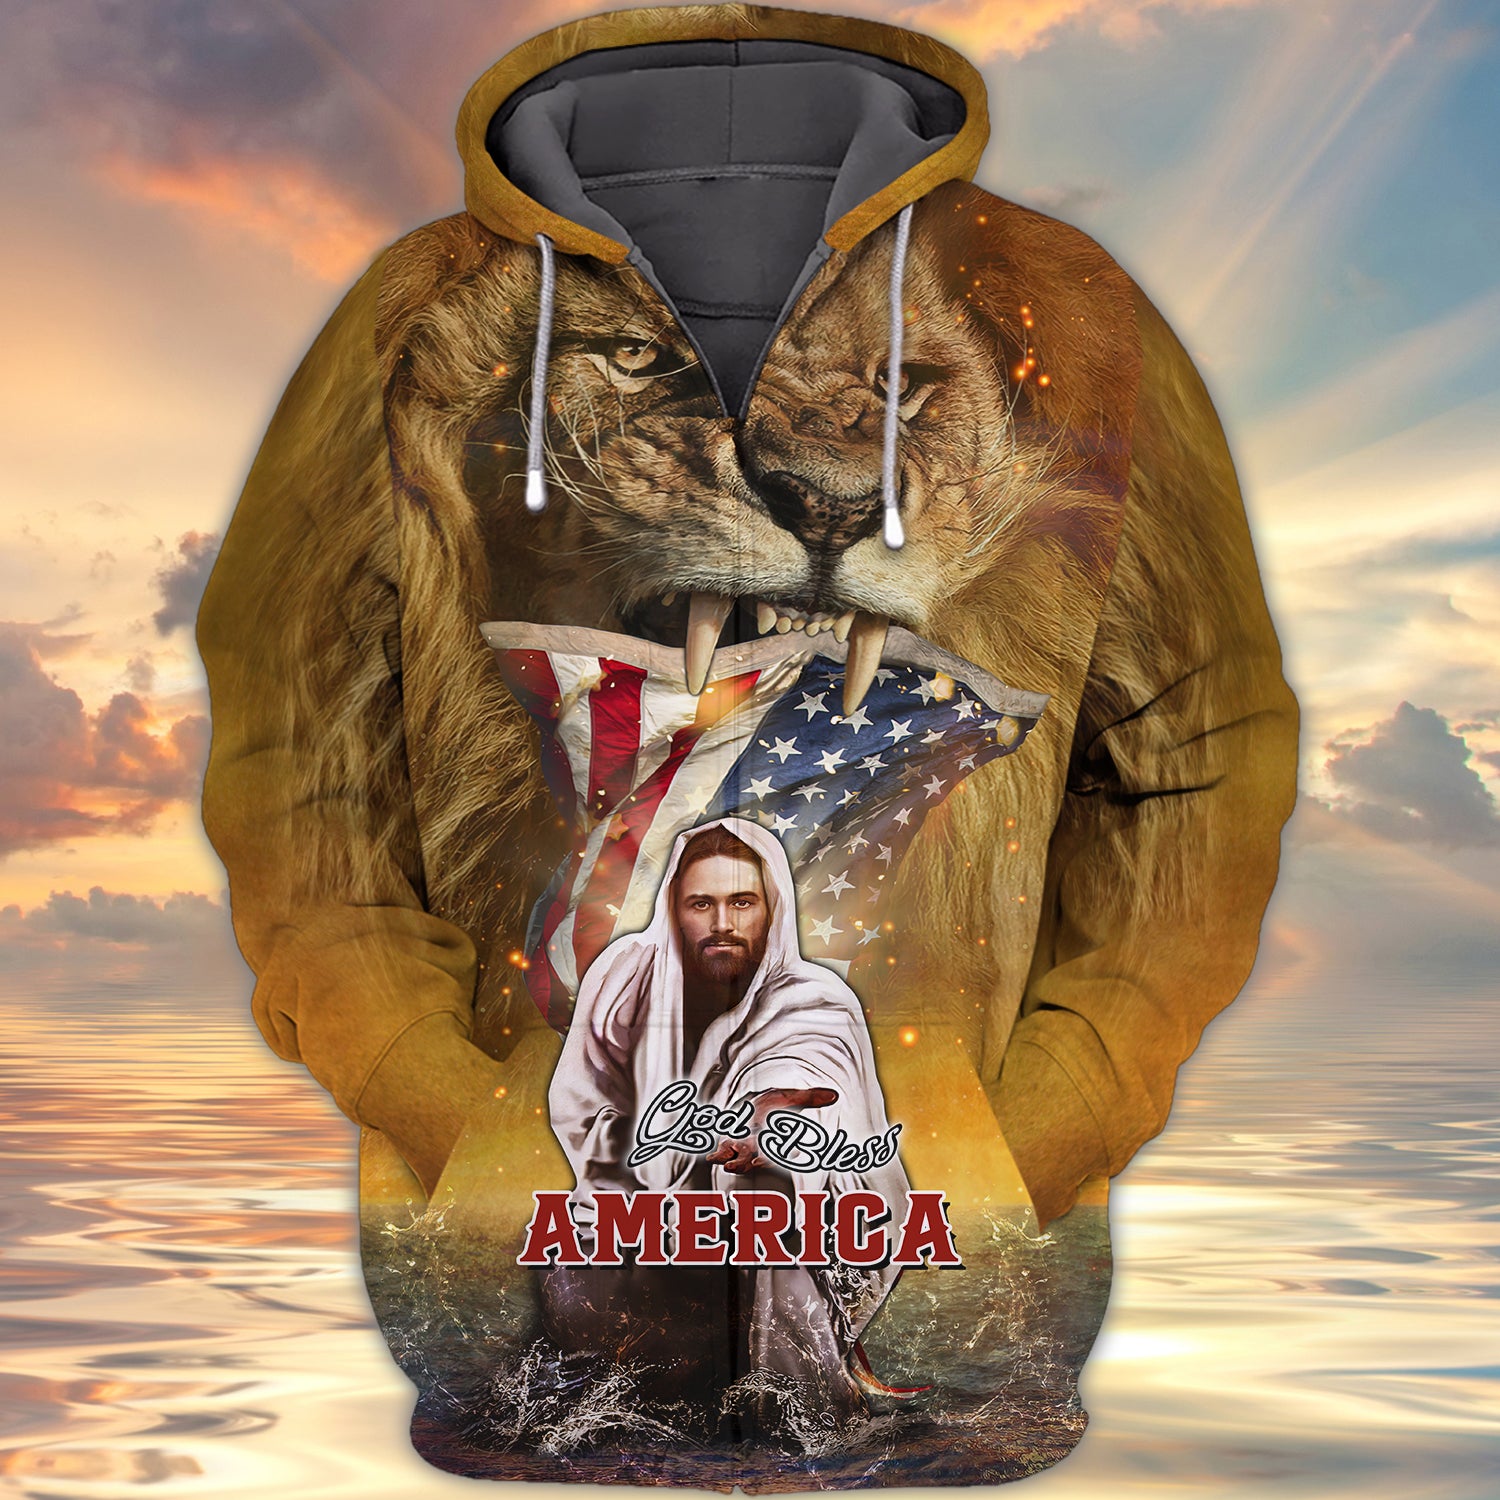 God bless America 3D full print shirt Gift for Christian 1855 Htv